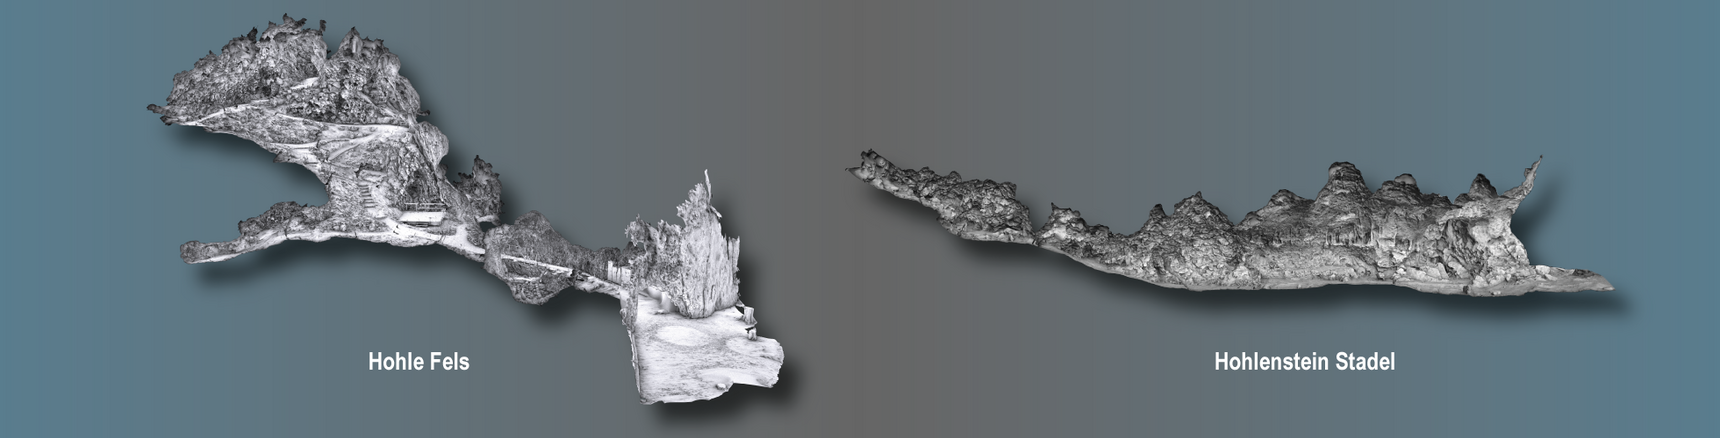 3D-Modelle ermöglichen virtuelle Blicke in das Höhleninnere. Im Bild der Hohle Fels (links) und die Stadel-Höhle im Hohlenstein (rechts).